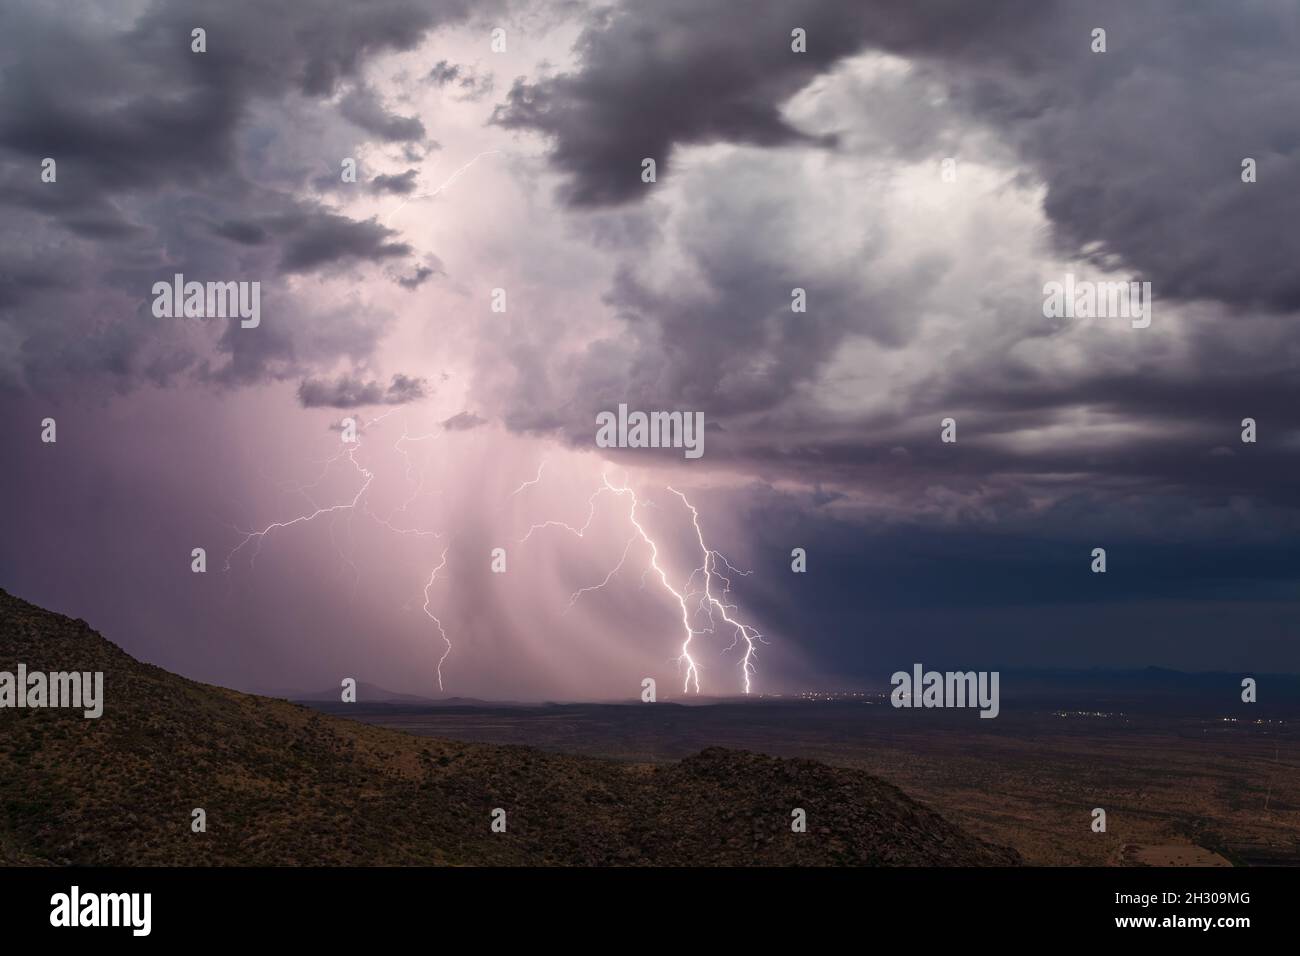 Le nubi di tempesta drammatica e il fulmine colpiscono da una tempesta di tuore sopra Wickenburg, Arizona Foto Stock